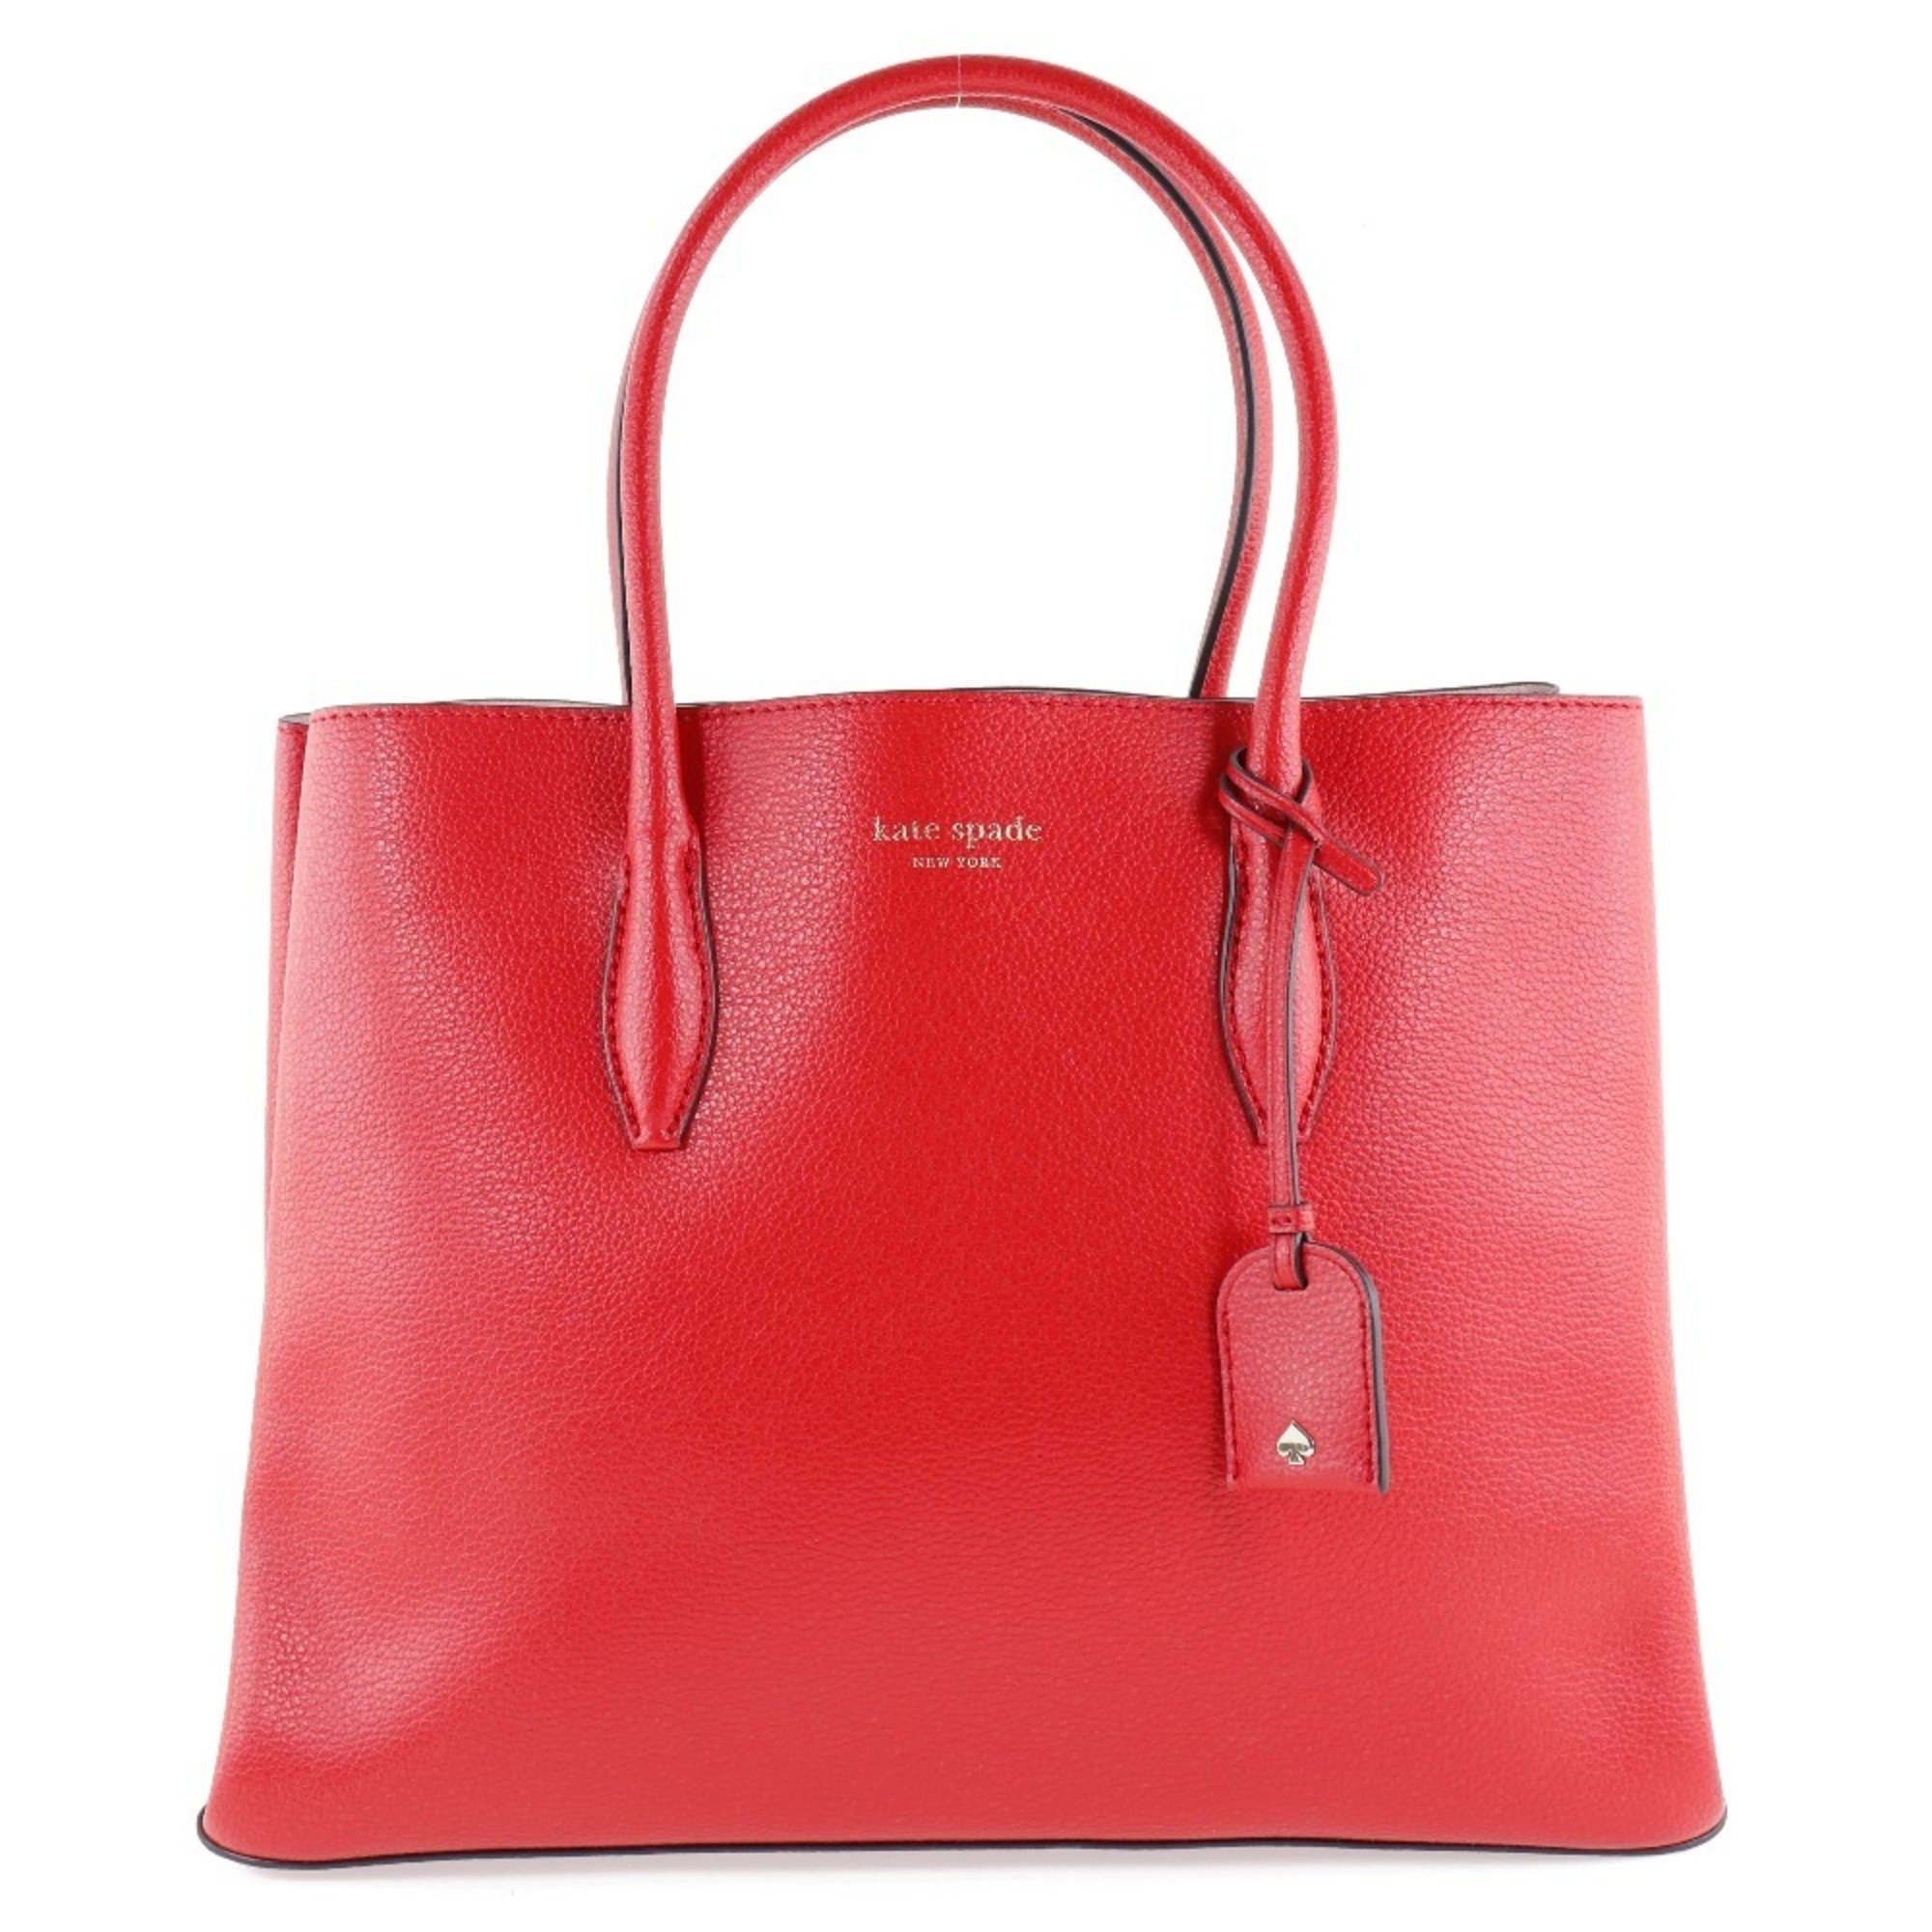 Kate Spade Medium Satchel Eva WKRU5696 Leather Red Ladies Tote Bag